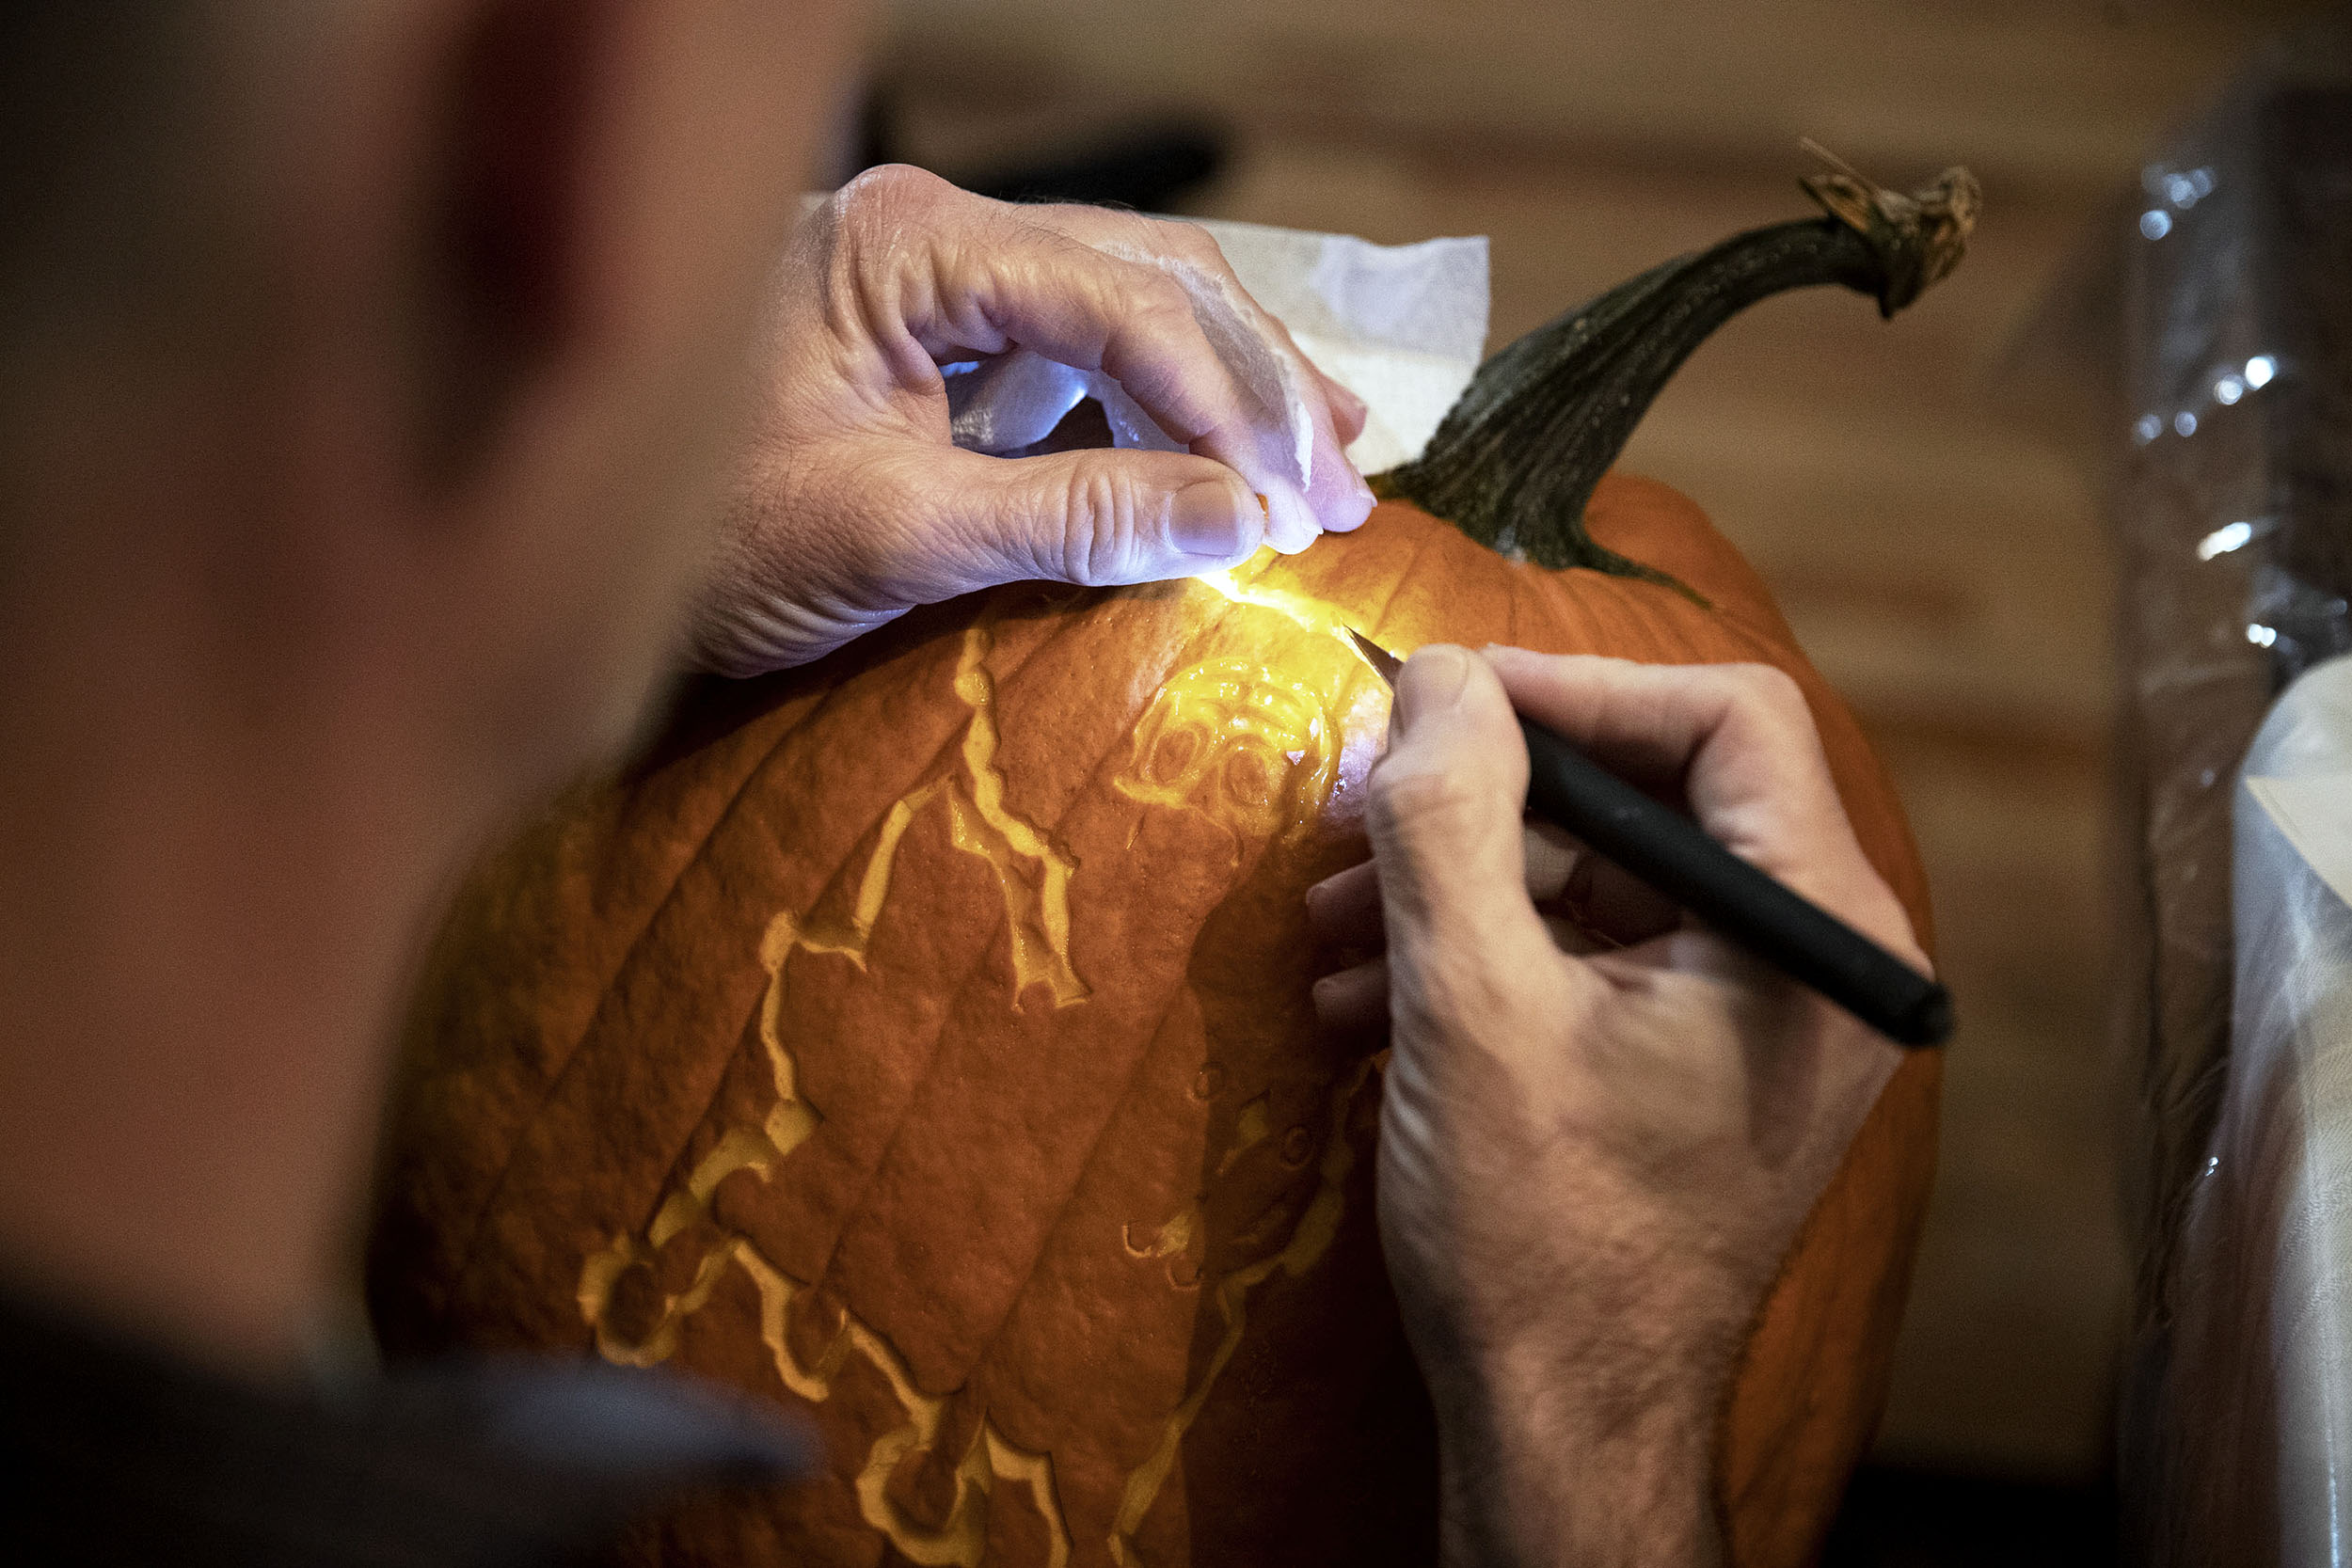 Morton carving a pumpkin